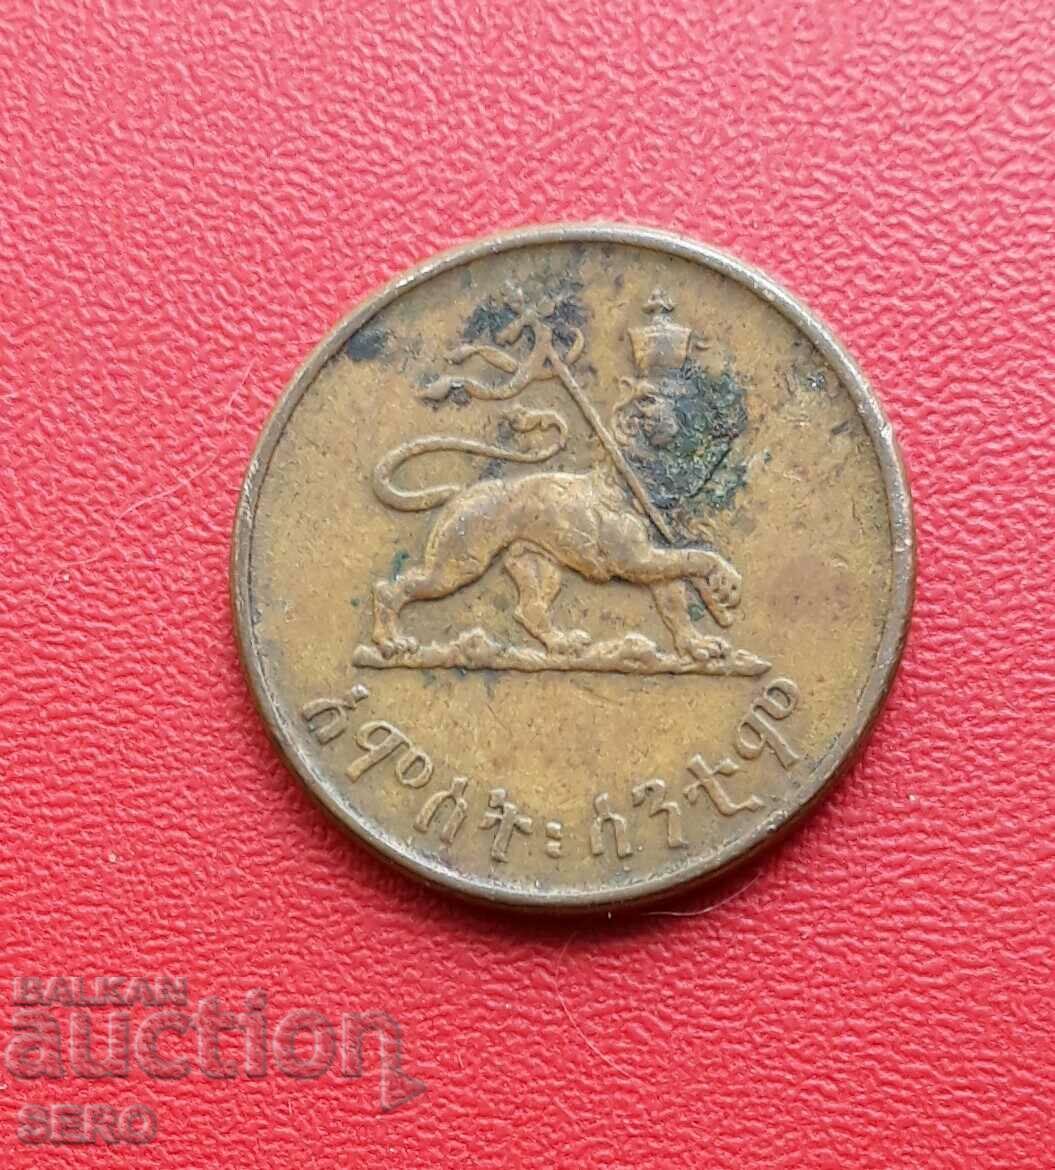 Ethiopia-5 centimes 1944